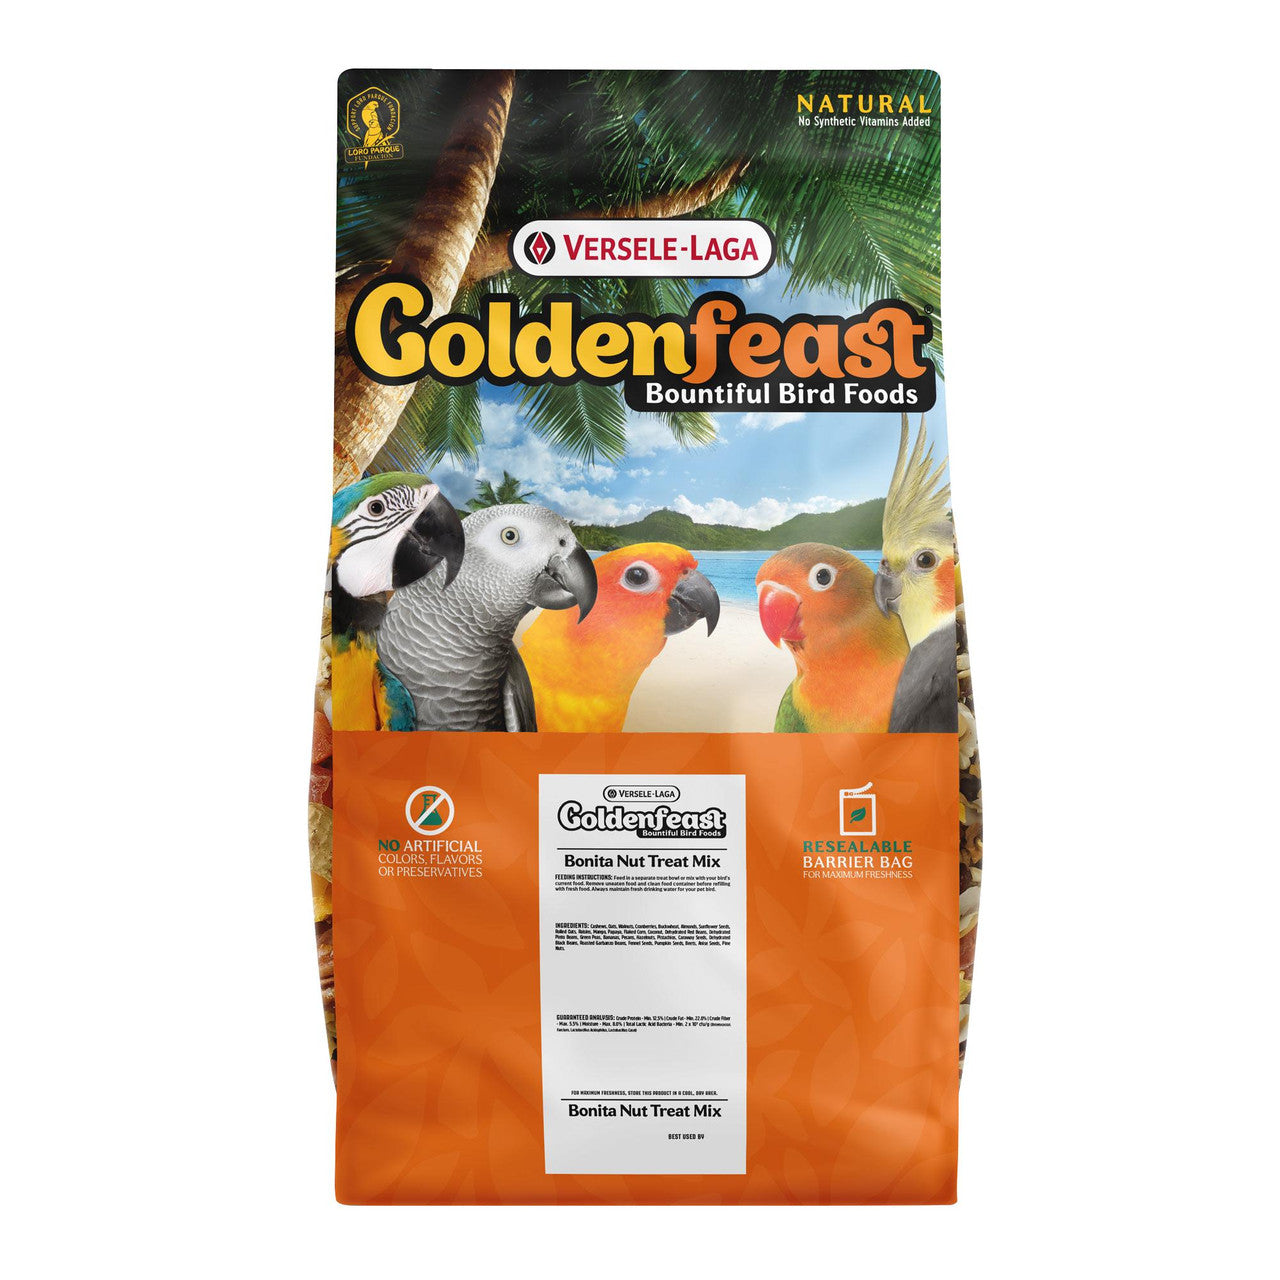 Goldenfeast Bonita Nut Mix Bird Food 17.5 lb 046706822676